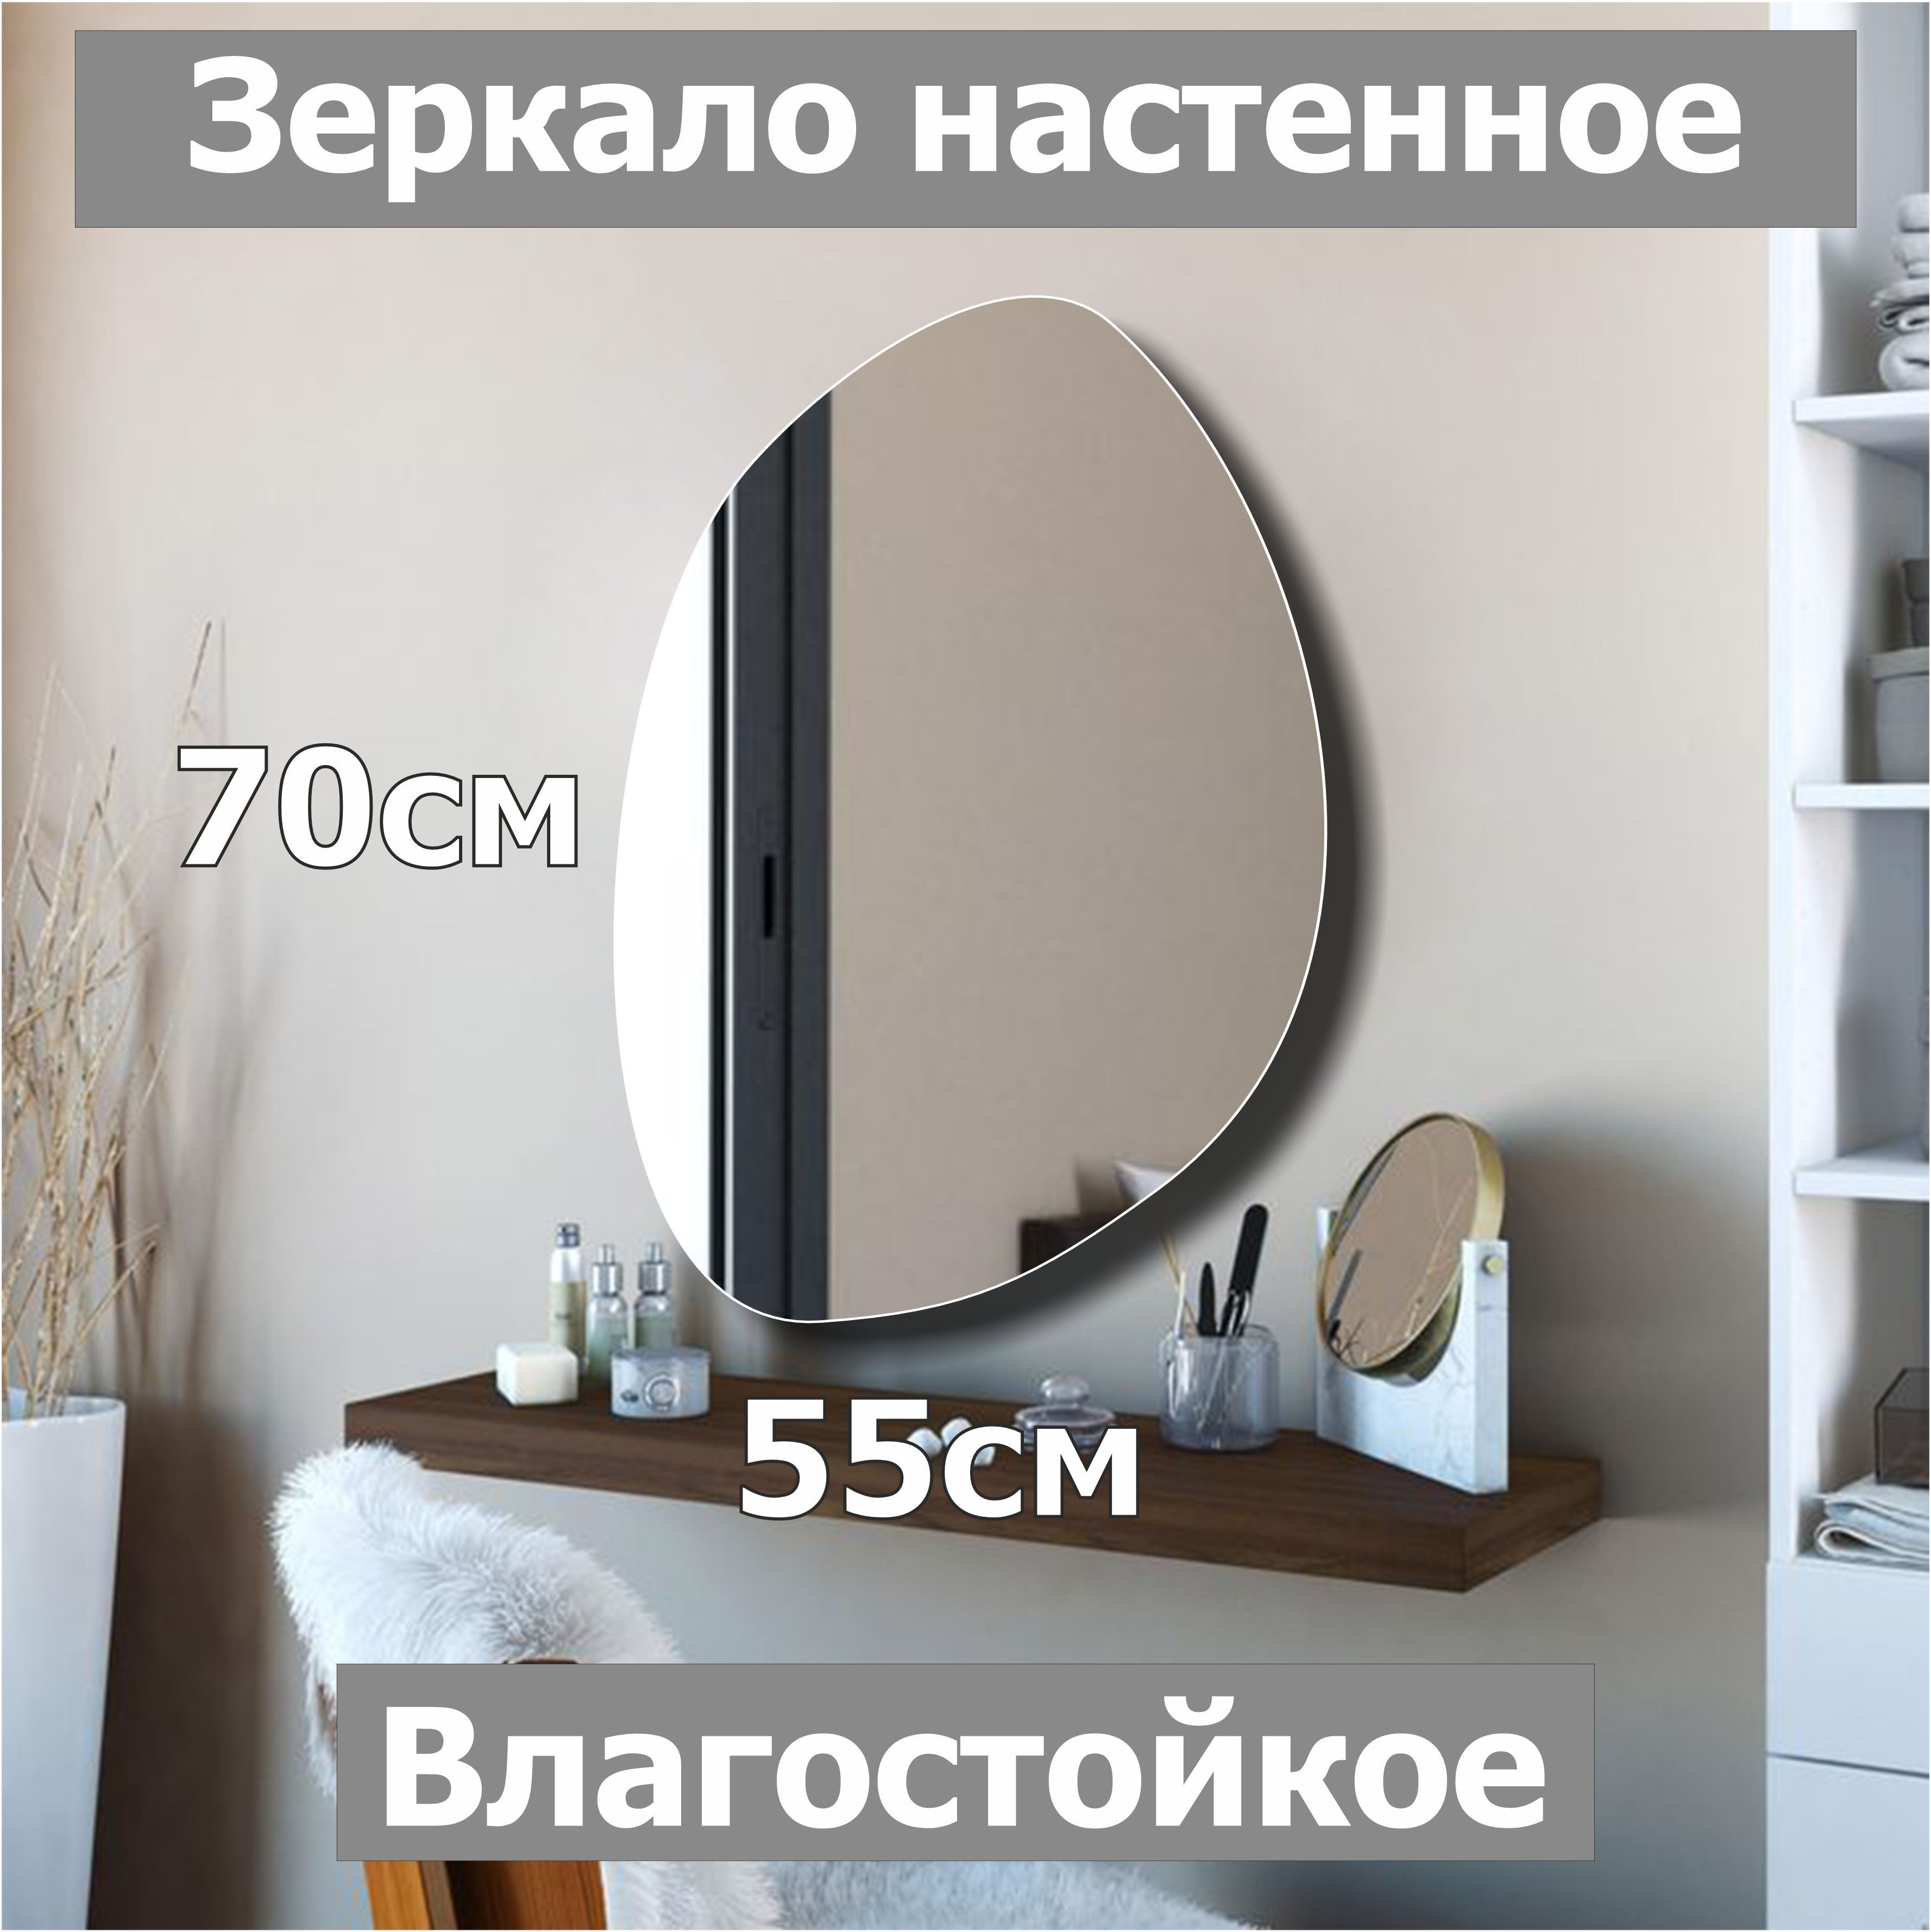 Зеркало настенное фигурное Камень5, 70х55см, асимметричное, интерьерное, влагостойкое настенное зеркало санлайт белый